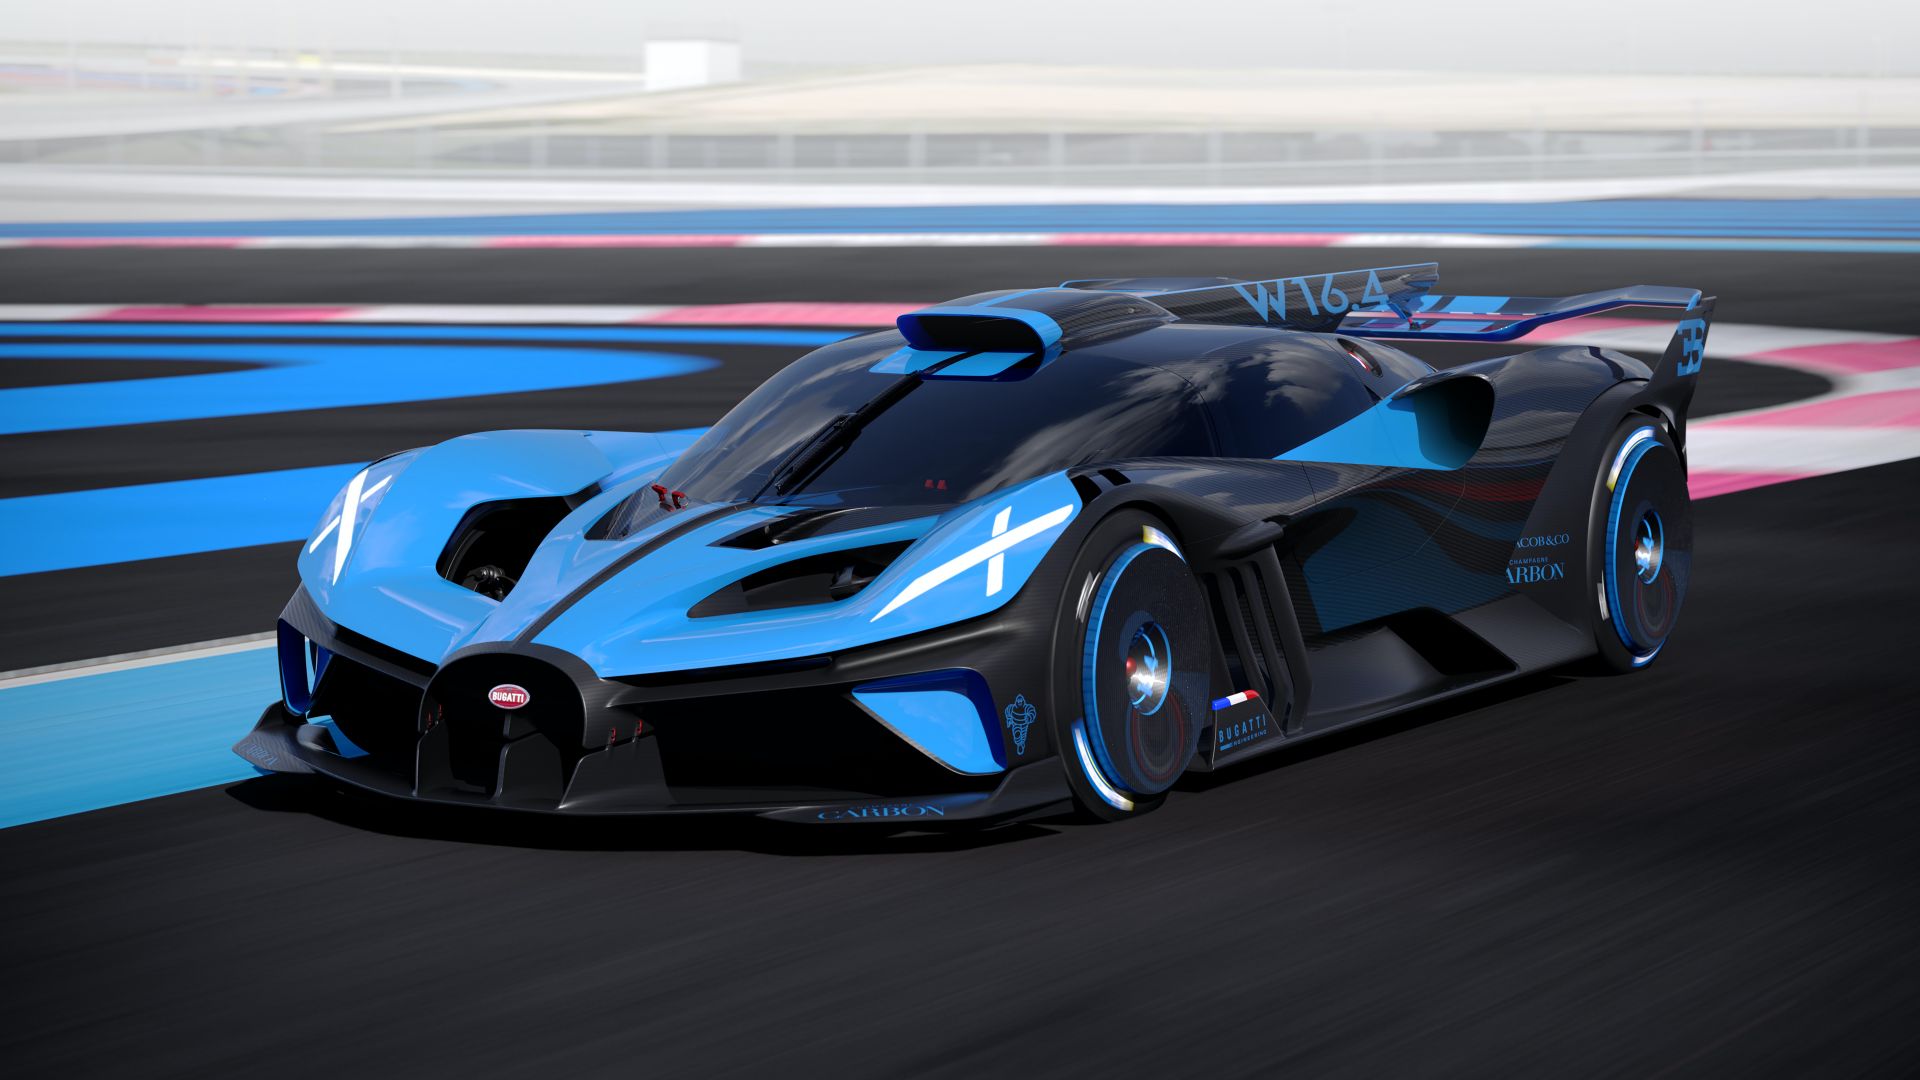 Французький автовиробник Bugatti нарешті представив свій новий грандіозний гіперкар Bolide. Це красиве й могутнє авто надихнуто історією гоночного автоспорту і обіцяє забезпечити неймовірні враження від водіння. Bolide, який має потужну двигун, розганяється до 100 км/год за ледь більше, ніж 2 секунди, а його максимальна швидкість перевищує 500 км/год.